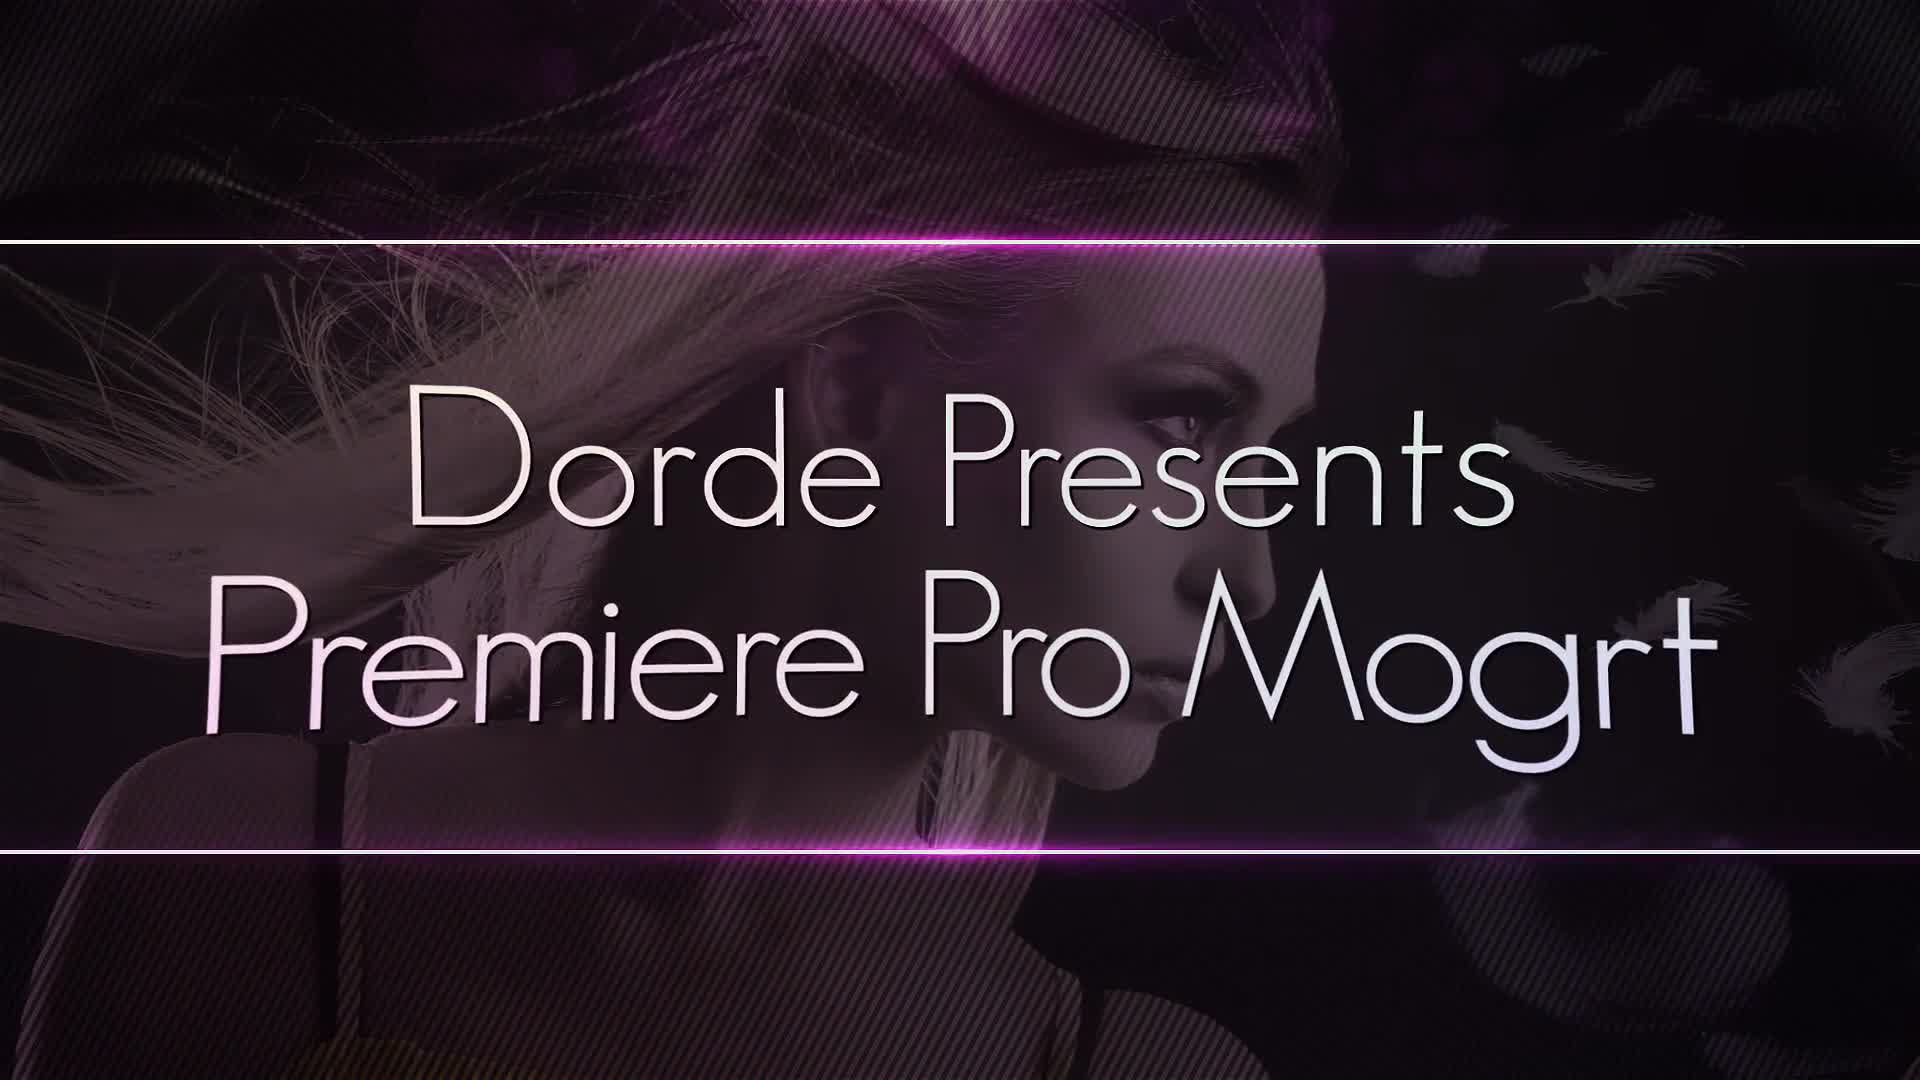 Top Models Premiere Pro Mogrt Project Videohive 38736305 Premiere Pro Image 1